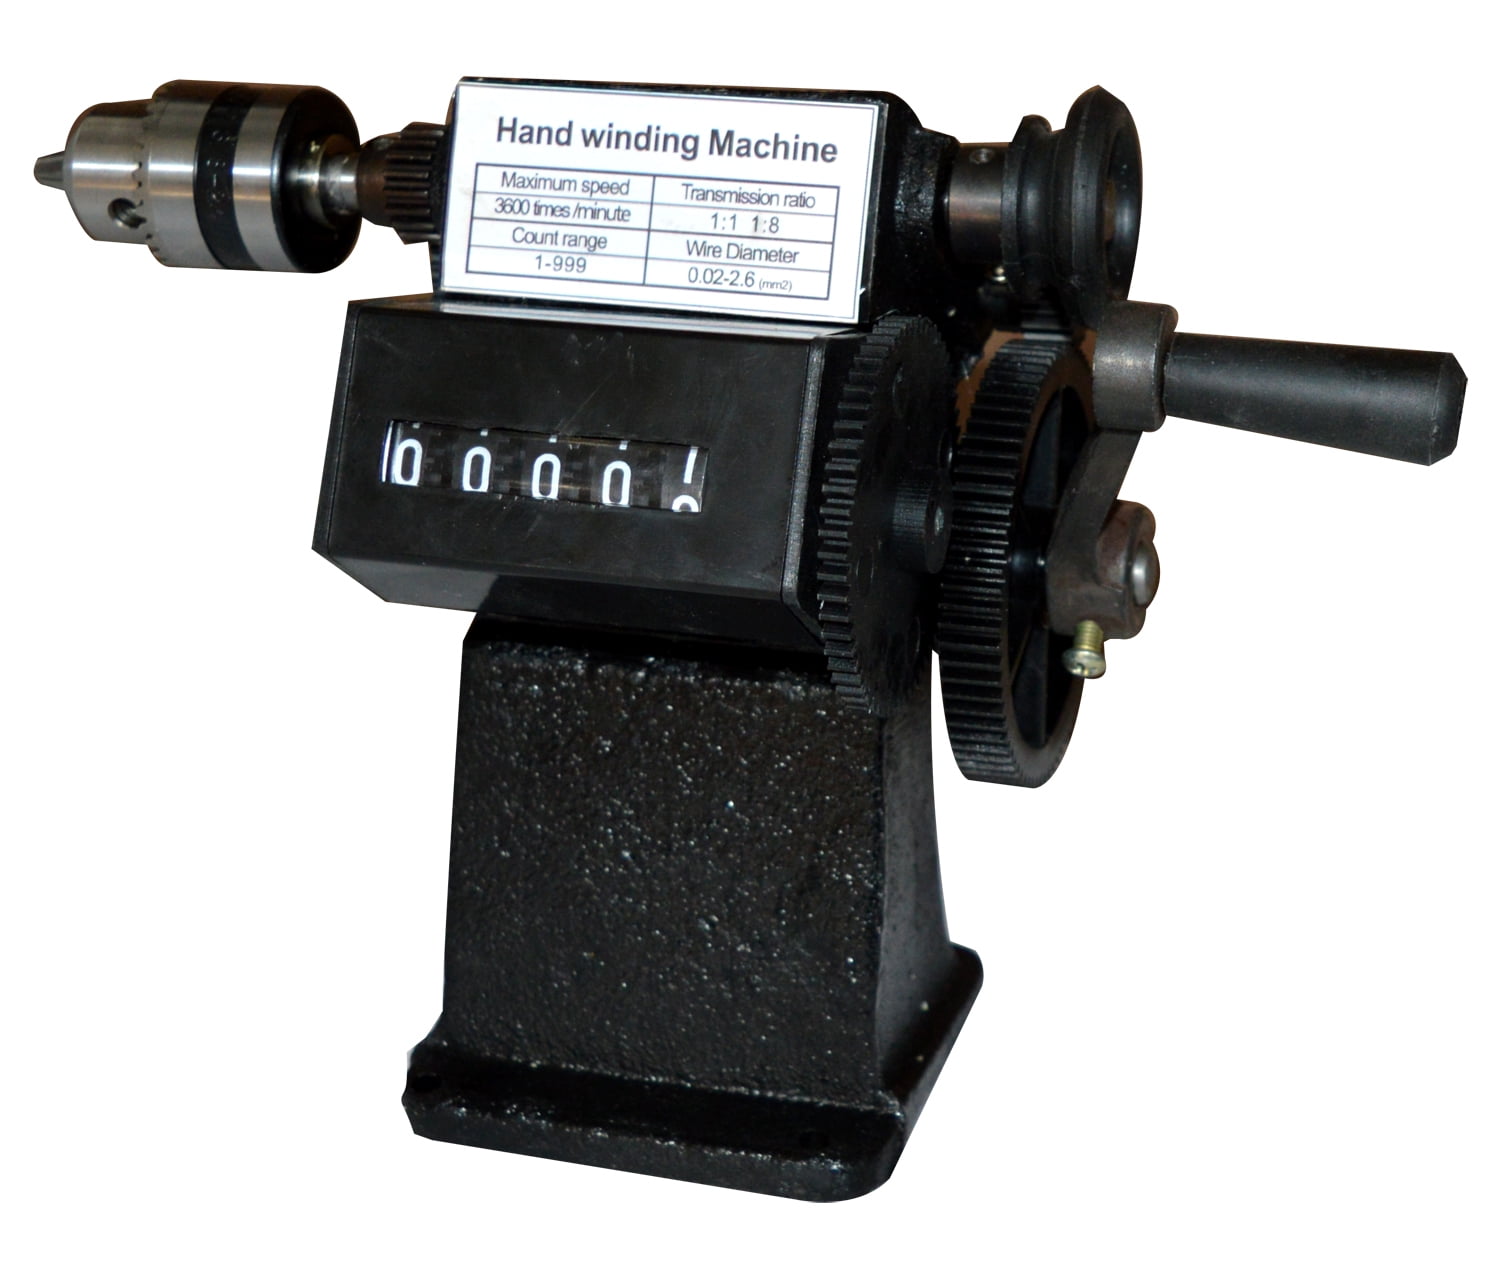 INTSUPERMAI Hand Winding Machine Manual Coil Winder 1.5-10mm 